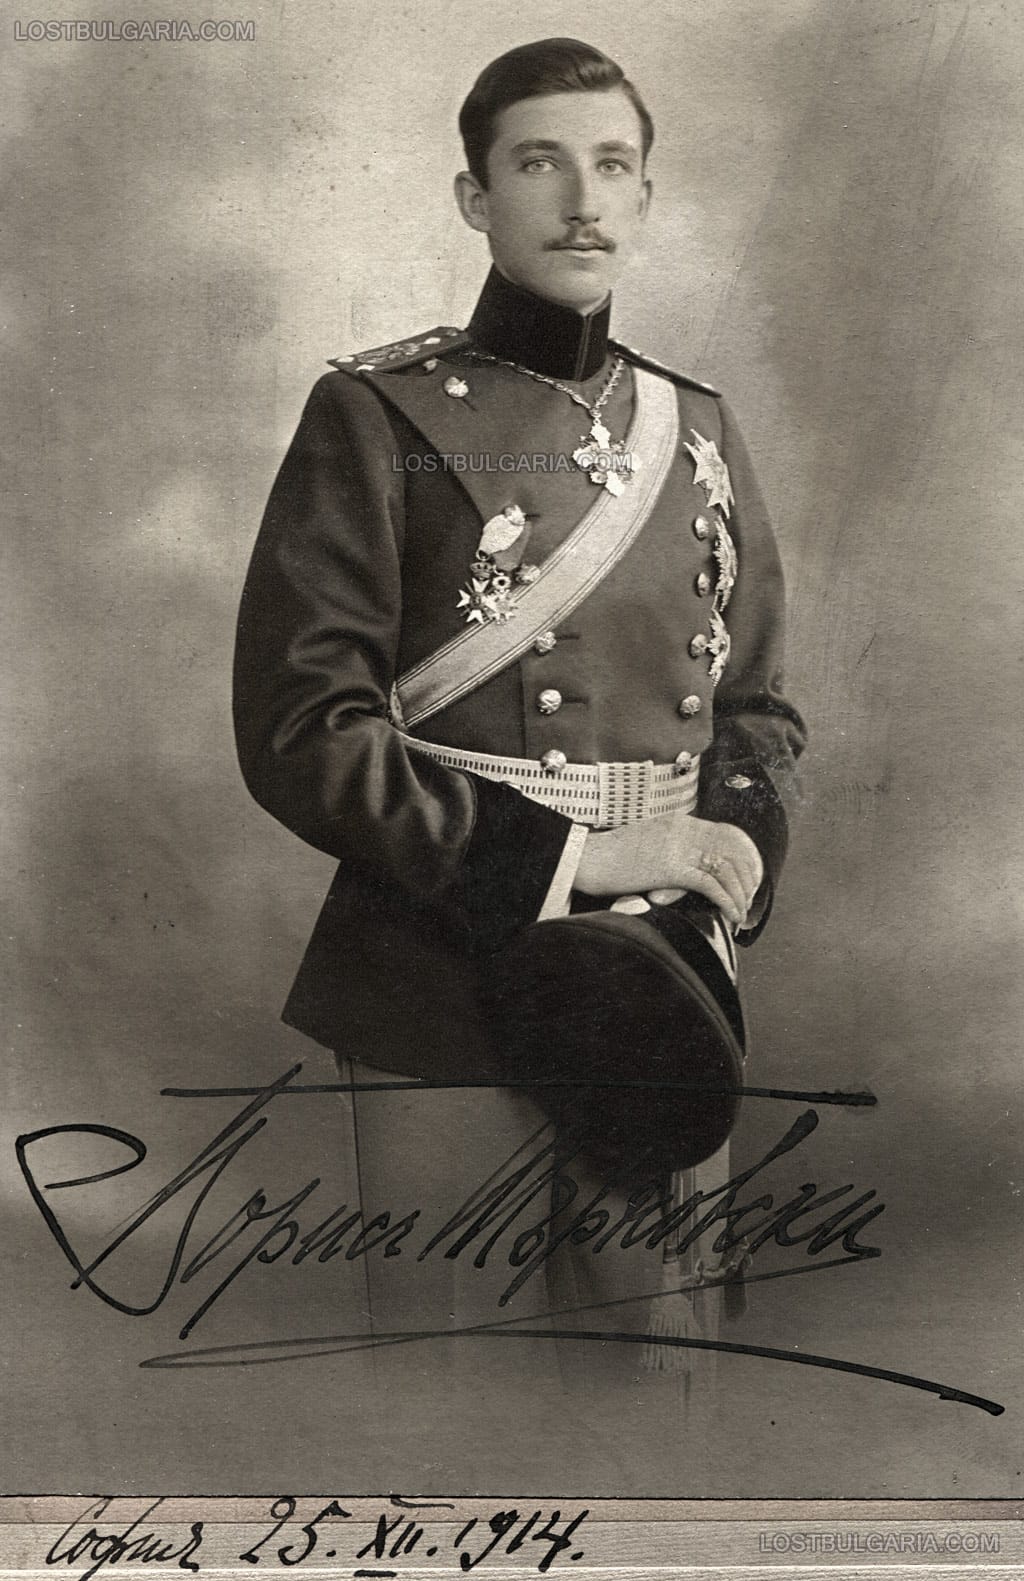 Студиен портрет на Княз Борис Търновски с автограф и дата 25 декември 1914 г., София